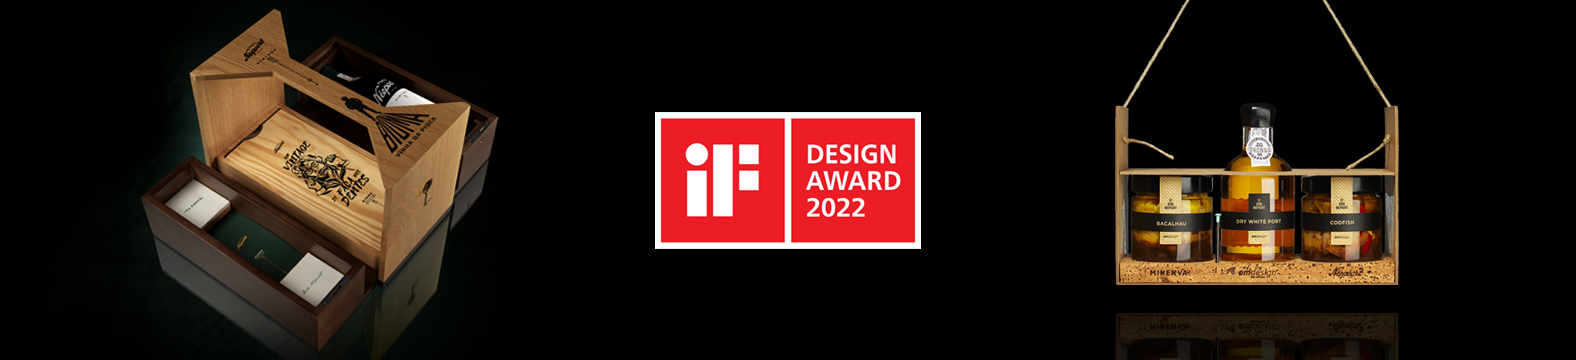 Omdesign traz de Berlim mais dois iF Awards para Portugal